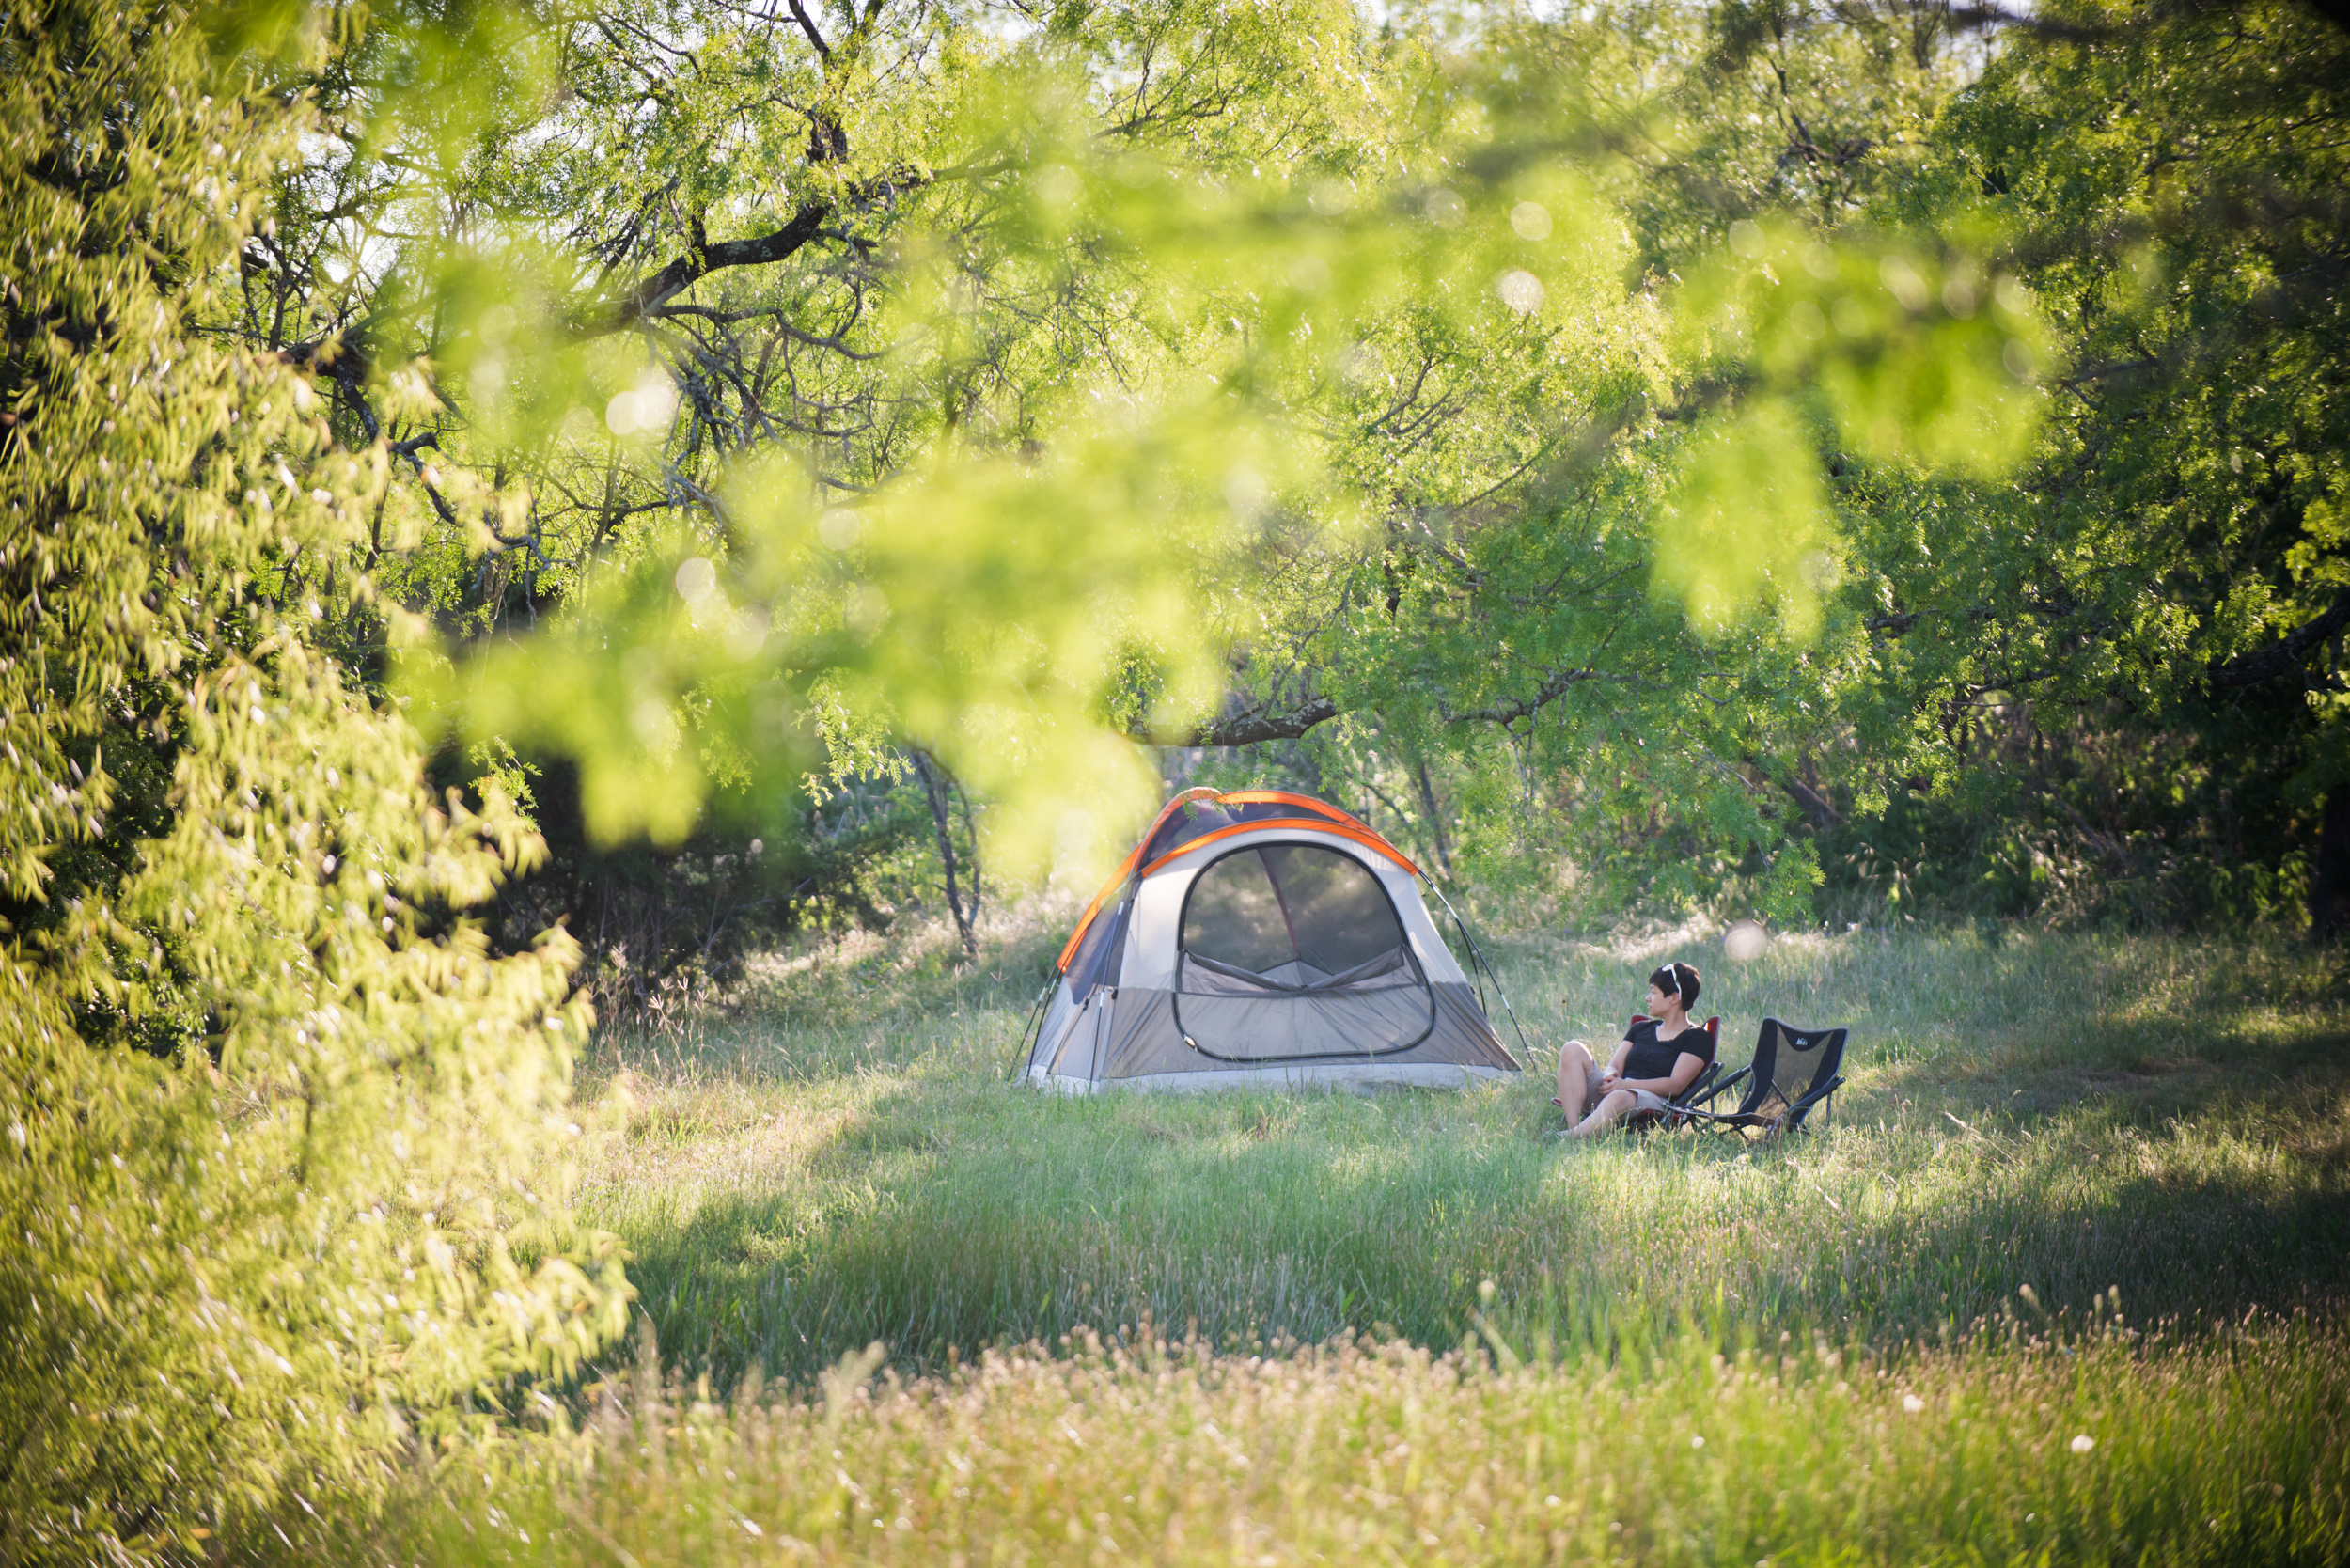 Hipcamp offre de nombreuses options de camping et de camping-car à bas prix au Texas qui sont pratiquement gratuites